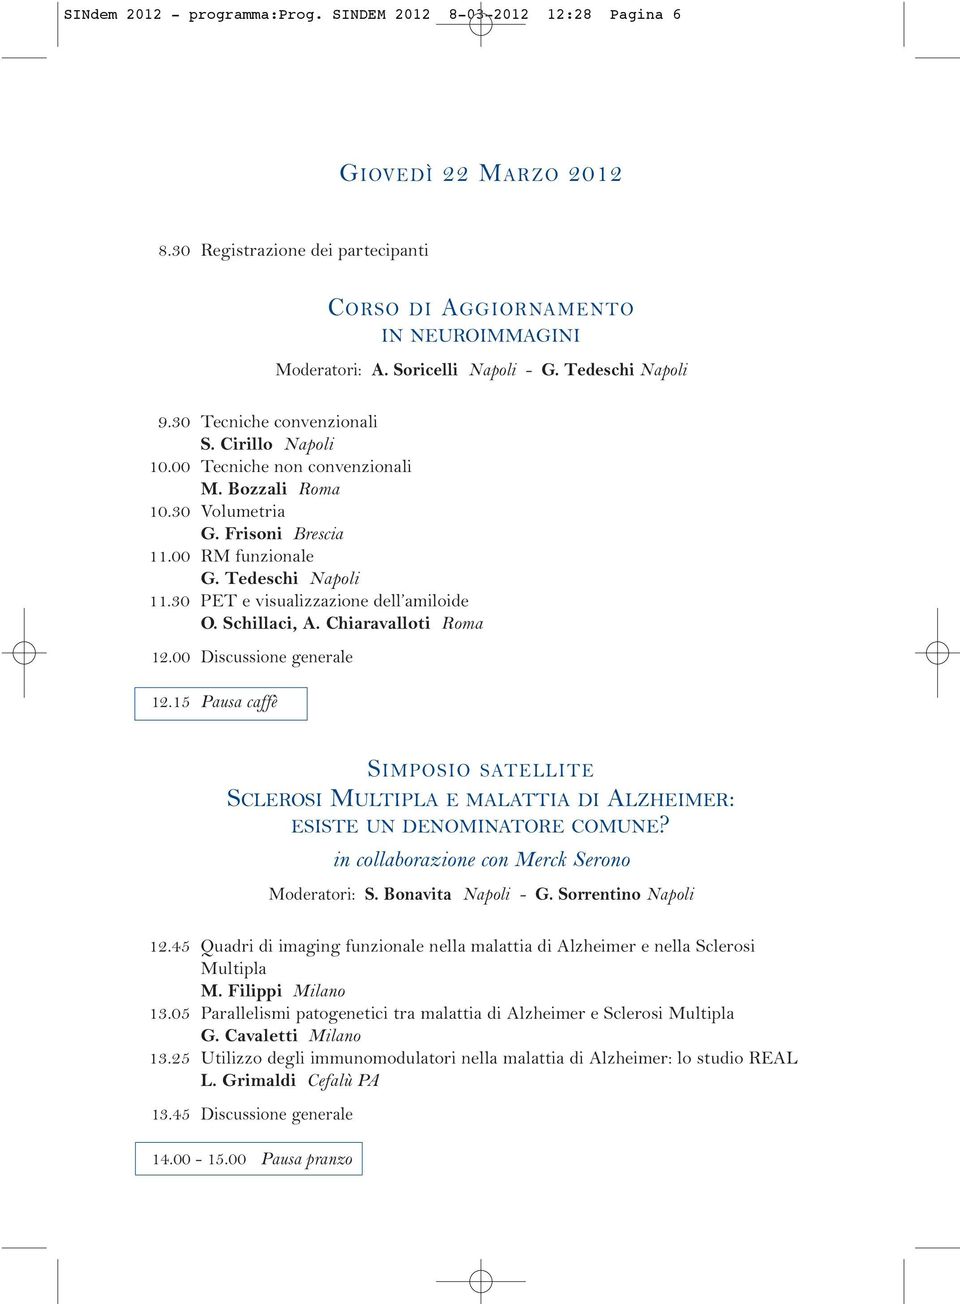 Tedeschi Napoli 11.30 PET e visualizzazione dell amiloide O. Schillaci, A. Chiaravalloti Roma 12.00 Discussione generale 12.